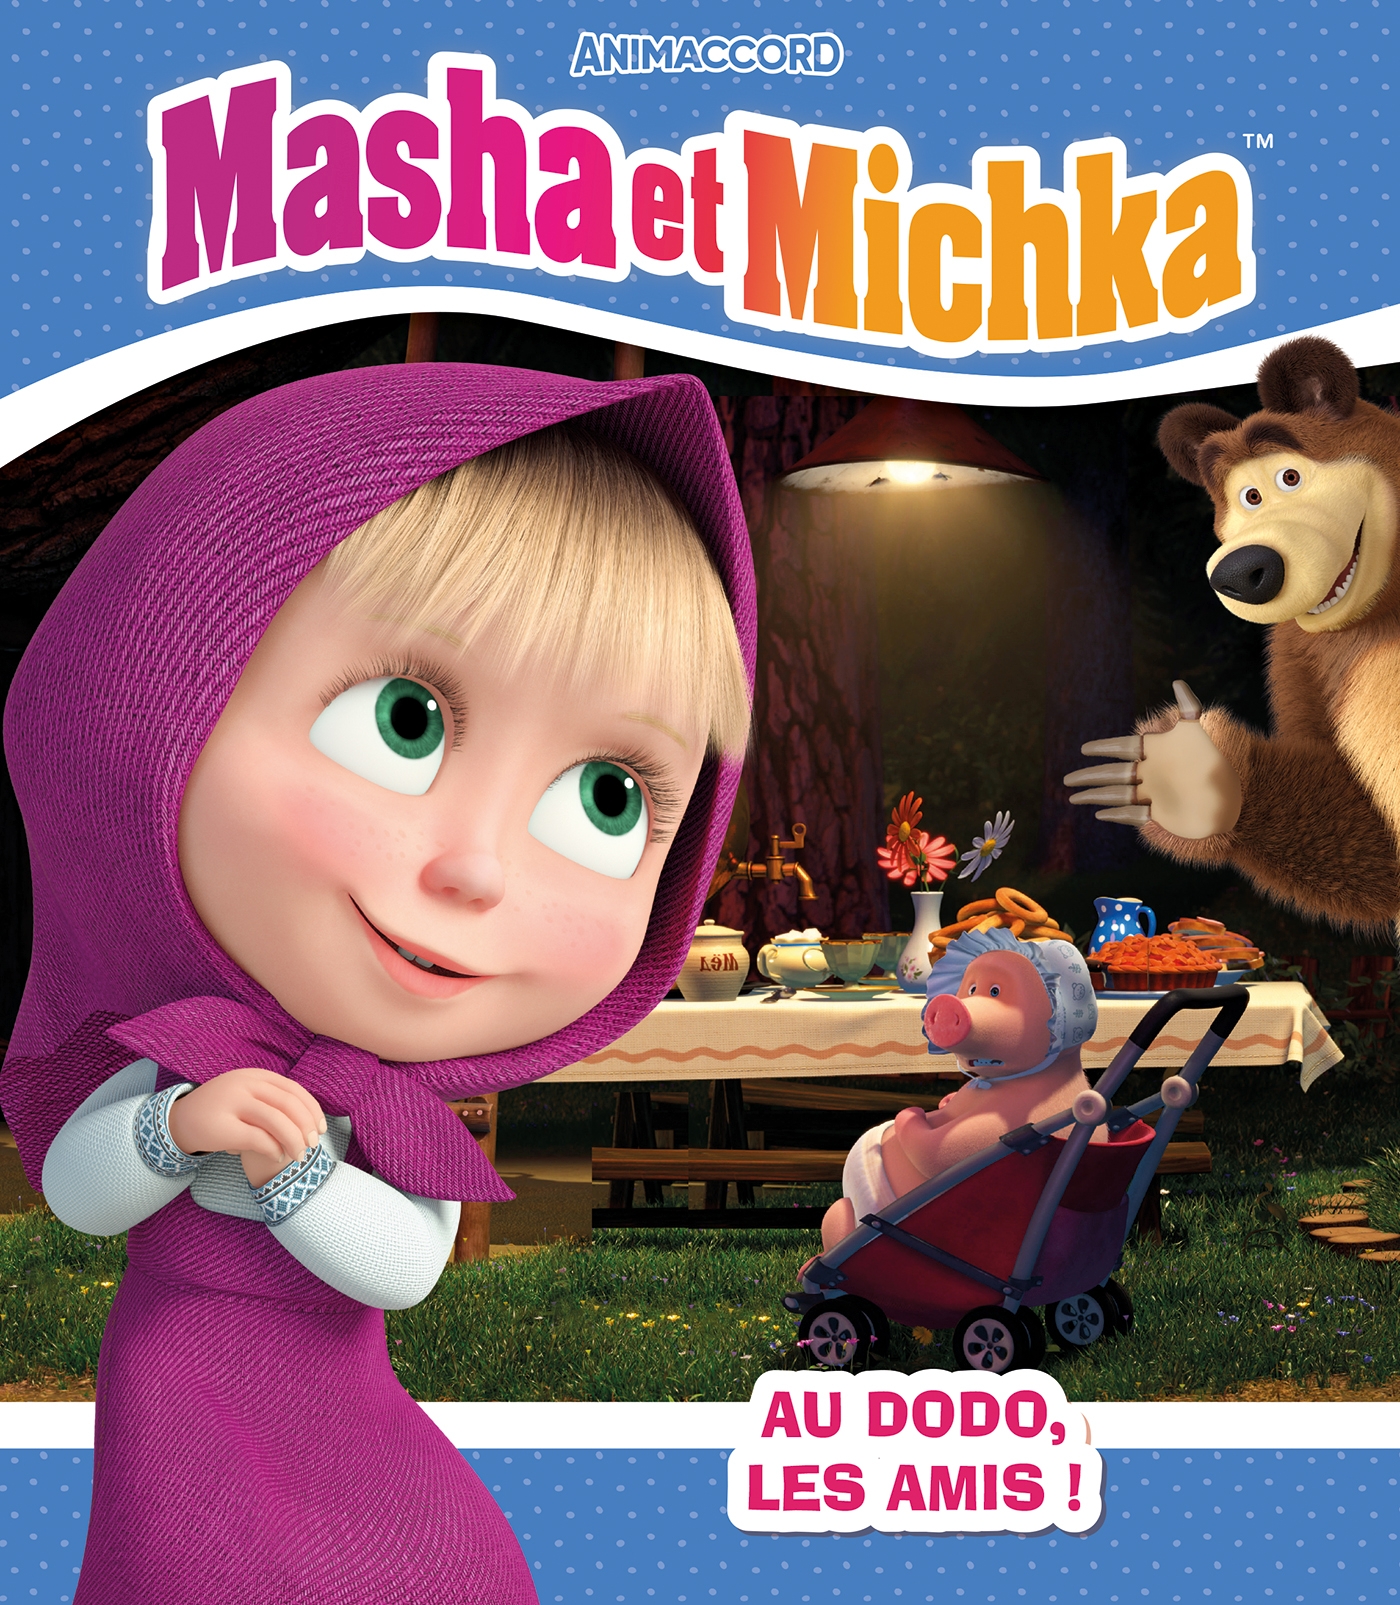 Mon livre d'autocollants : Masha et Michka - Collectif - Hachette